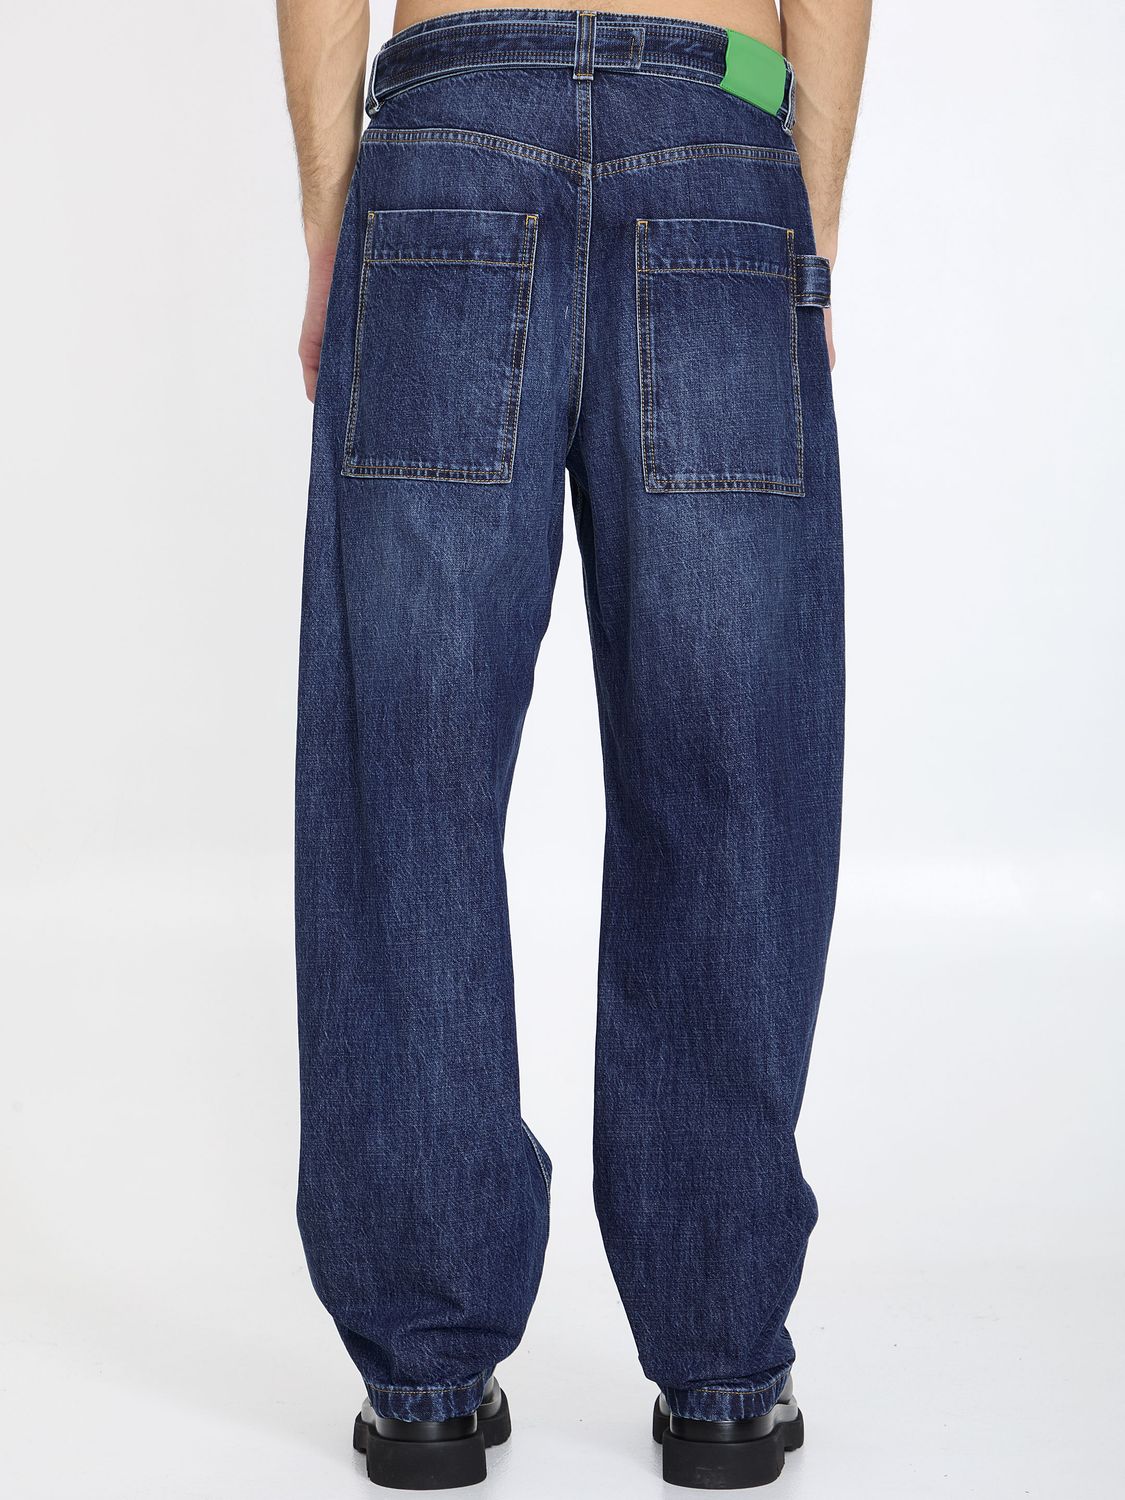 BOTTEGA VENETA Men's Wide-Leg Denim Jeans with Belt in Light Blue